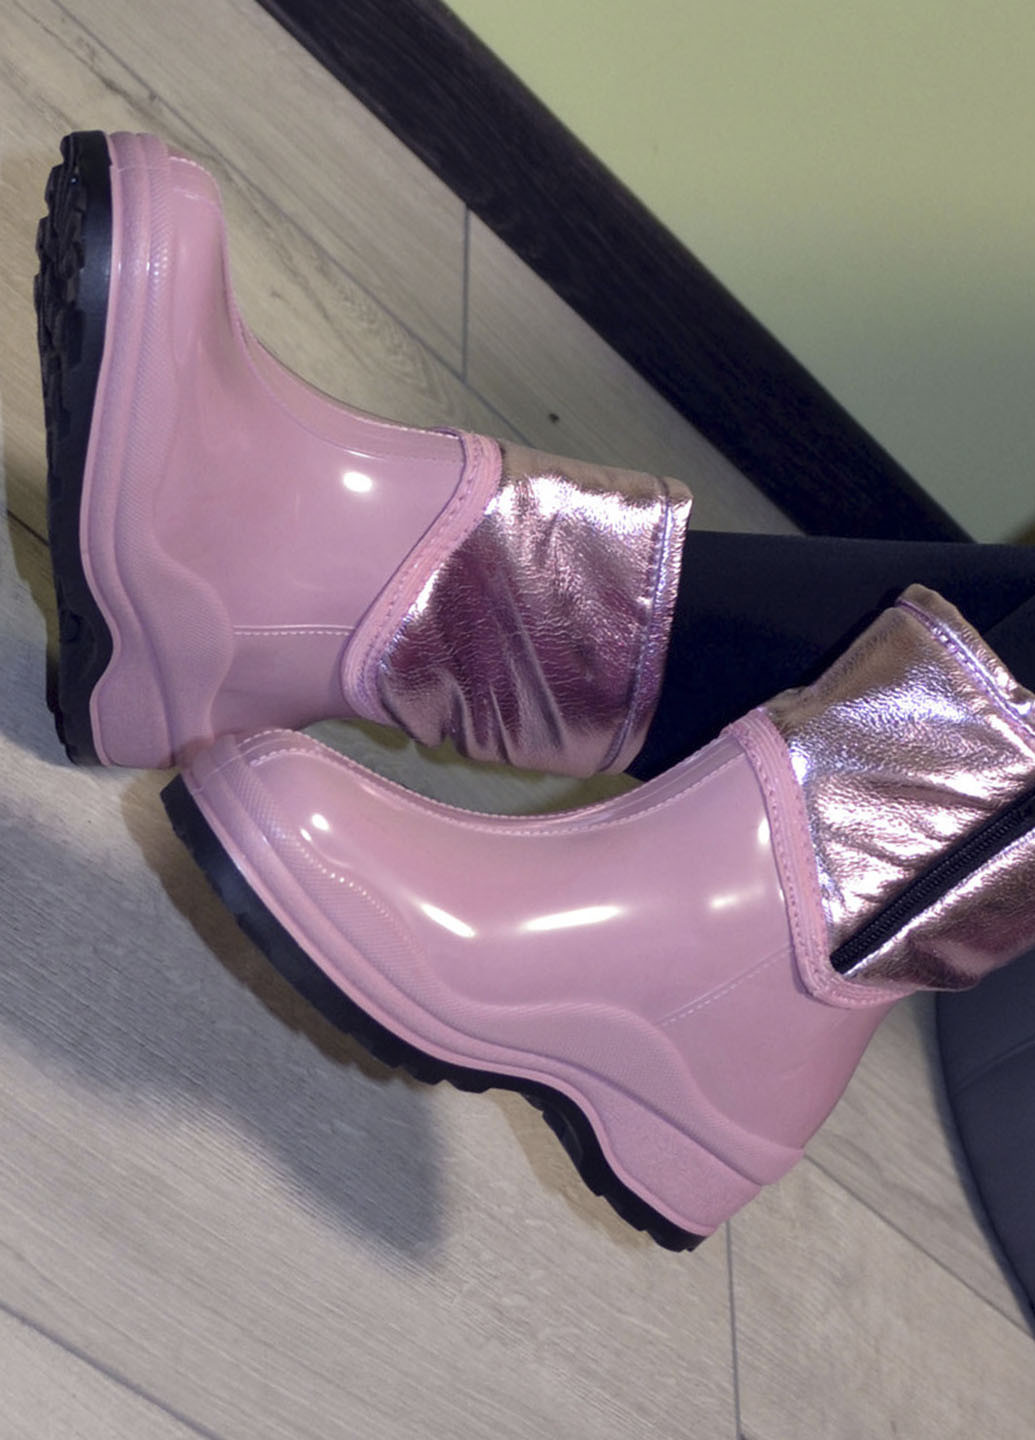 Розовые ботинки полусапожки резиновые непромокаемые утепленные флисом по всей длине розовые женские W-Shoes